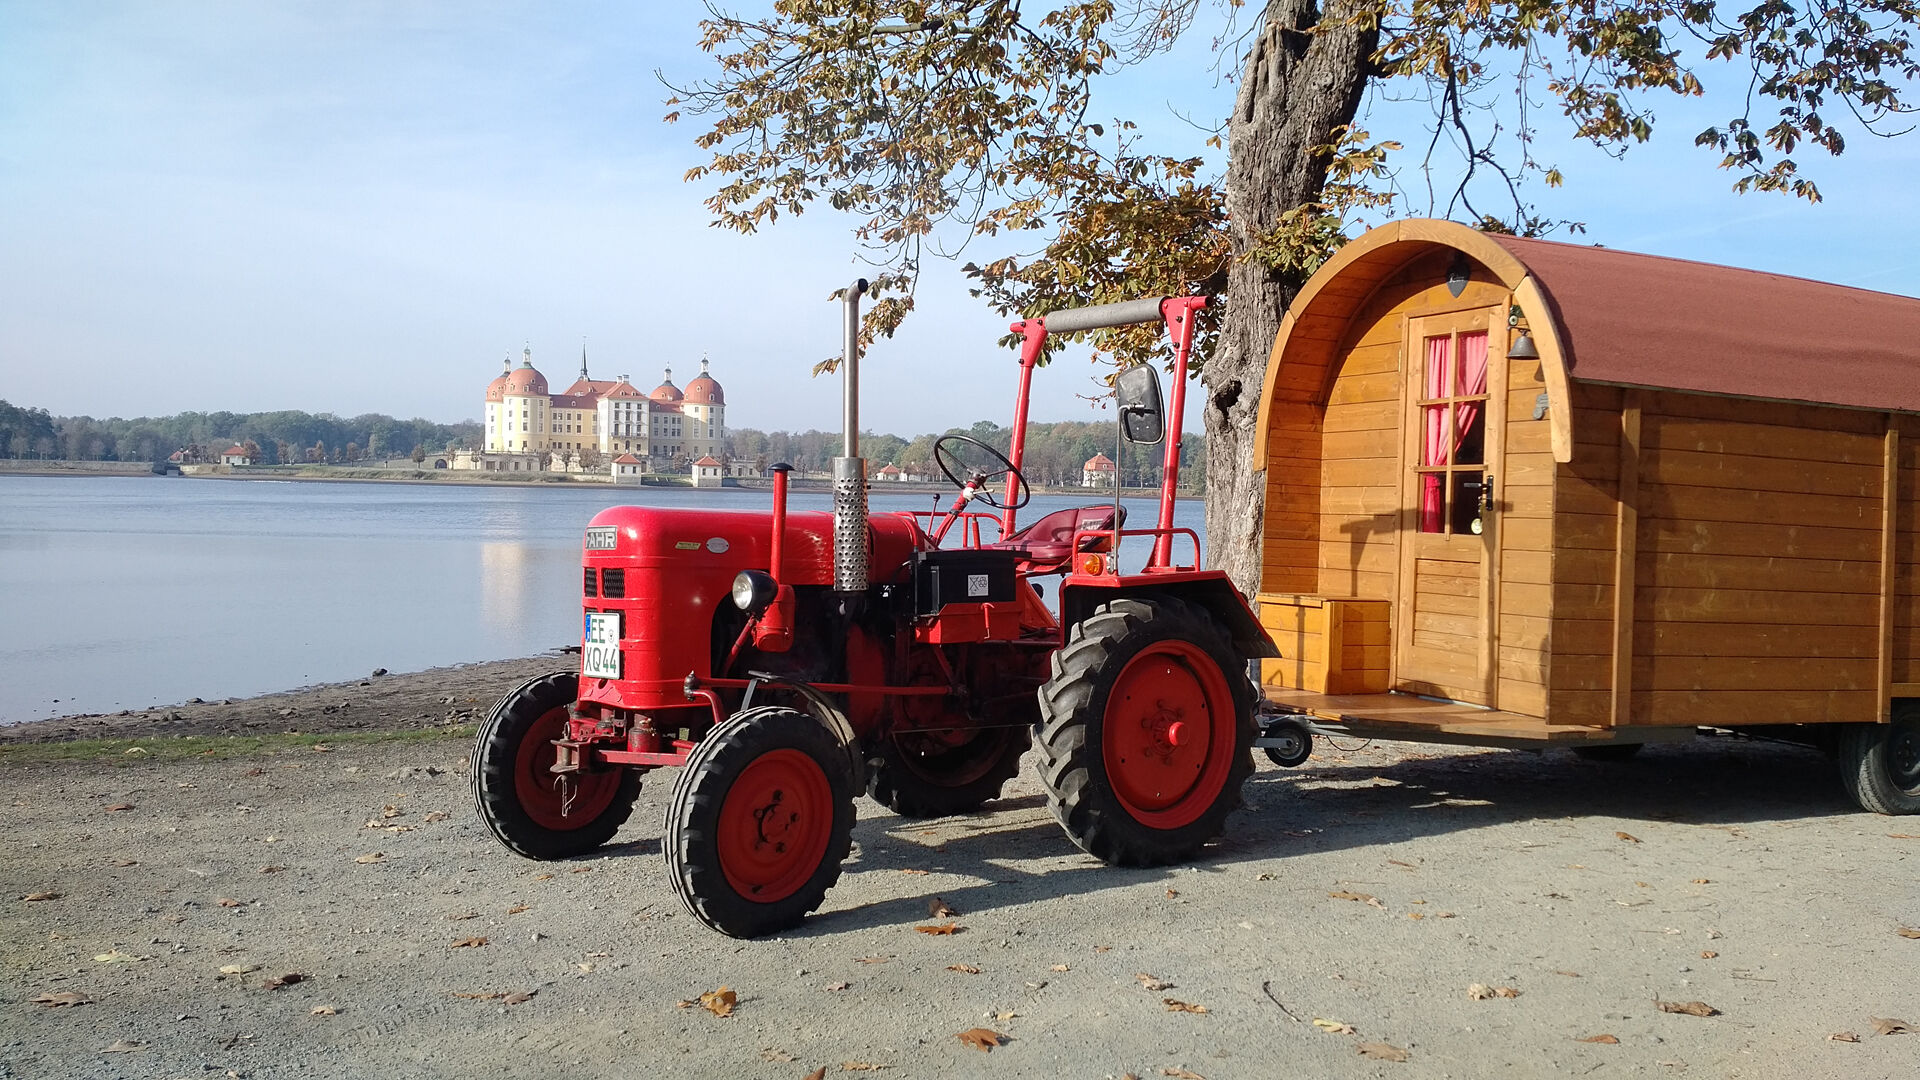 Schäferwagenurlaub mit historischem Traktor in der Moritzburger Teichlandschaft 
© Pressefoto WTH Moritzburg UG